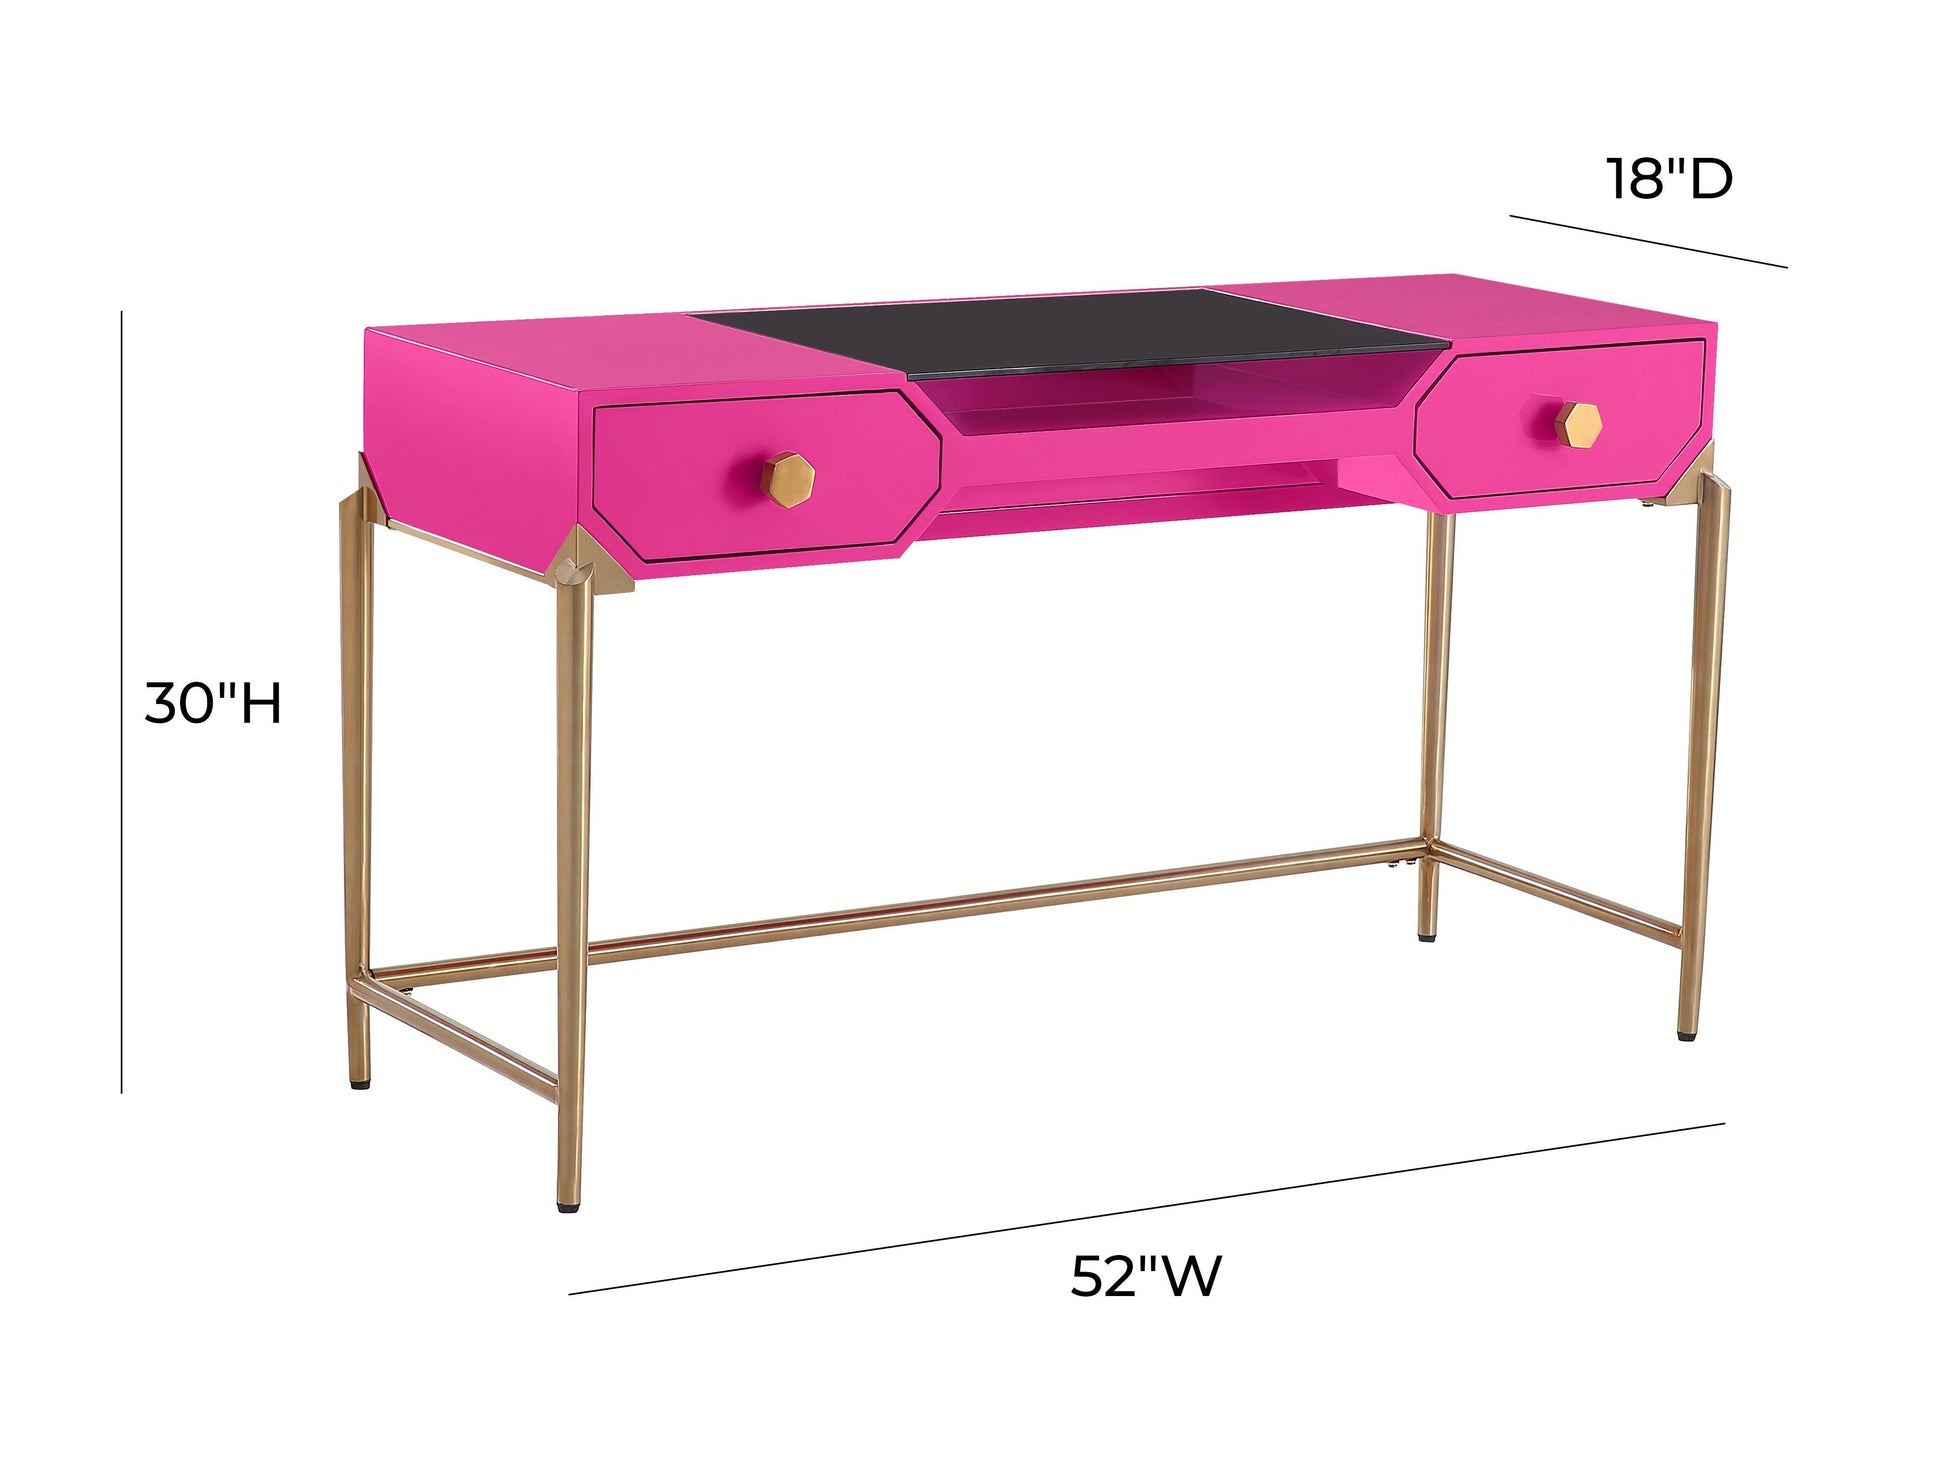 Tov Furniture Bajo Pink Lacquer Desk